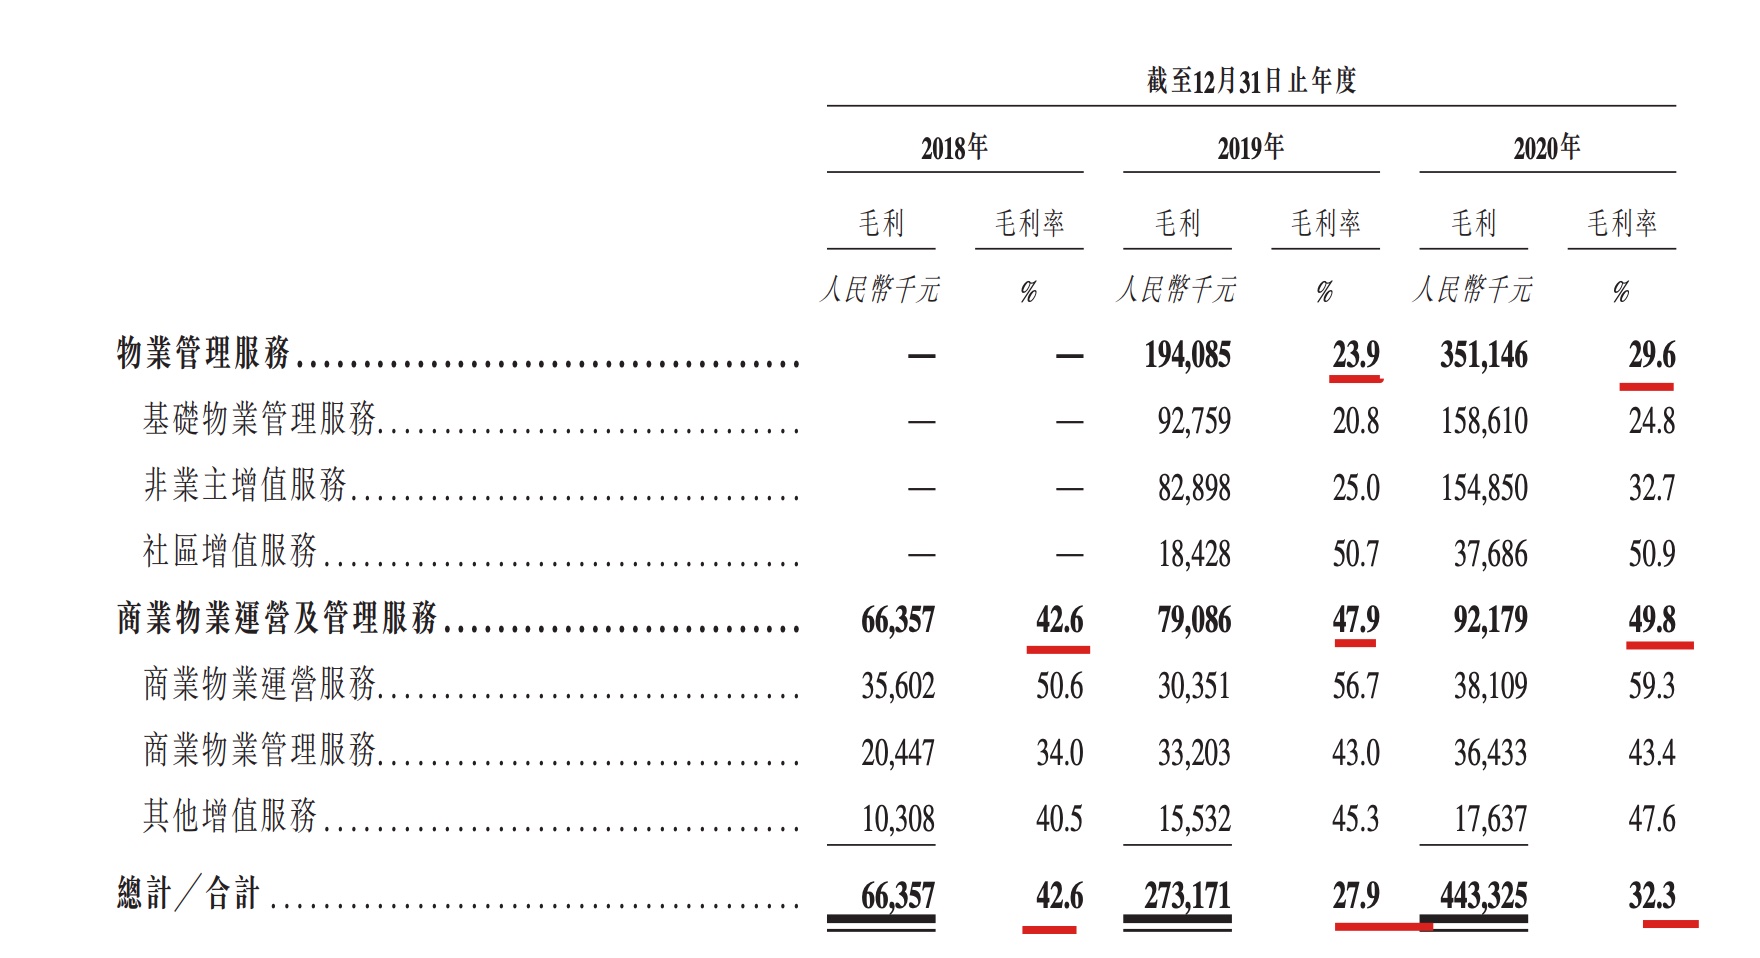 阳光智博服务赴港IPO：在管面积3160万方 94.4%收入来自母公司